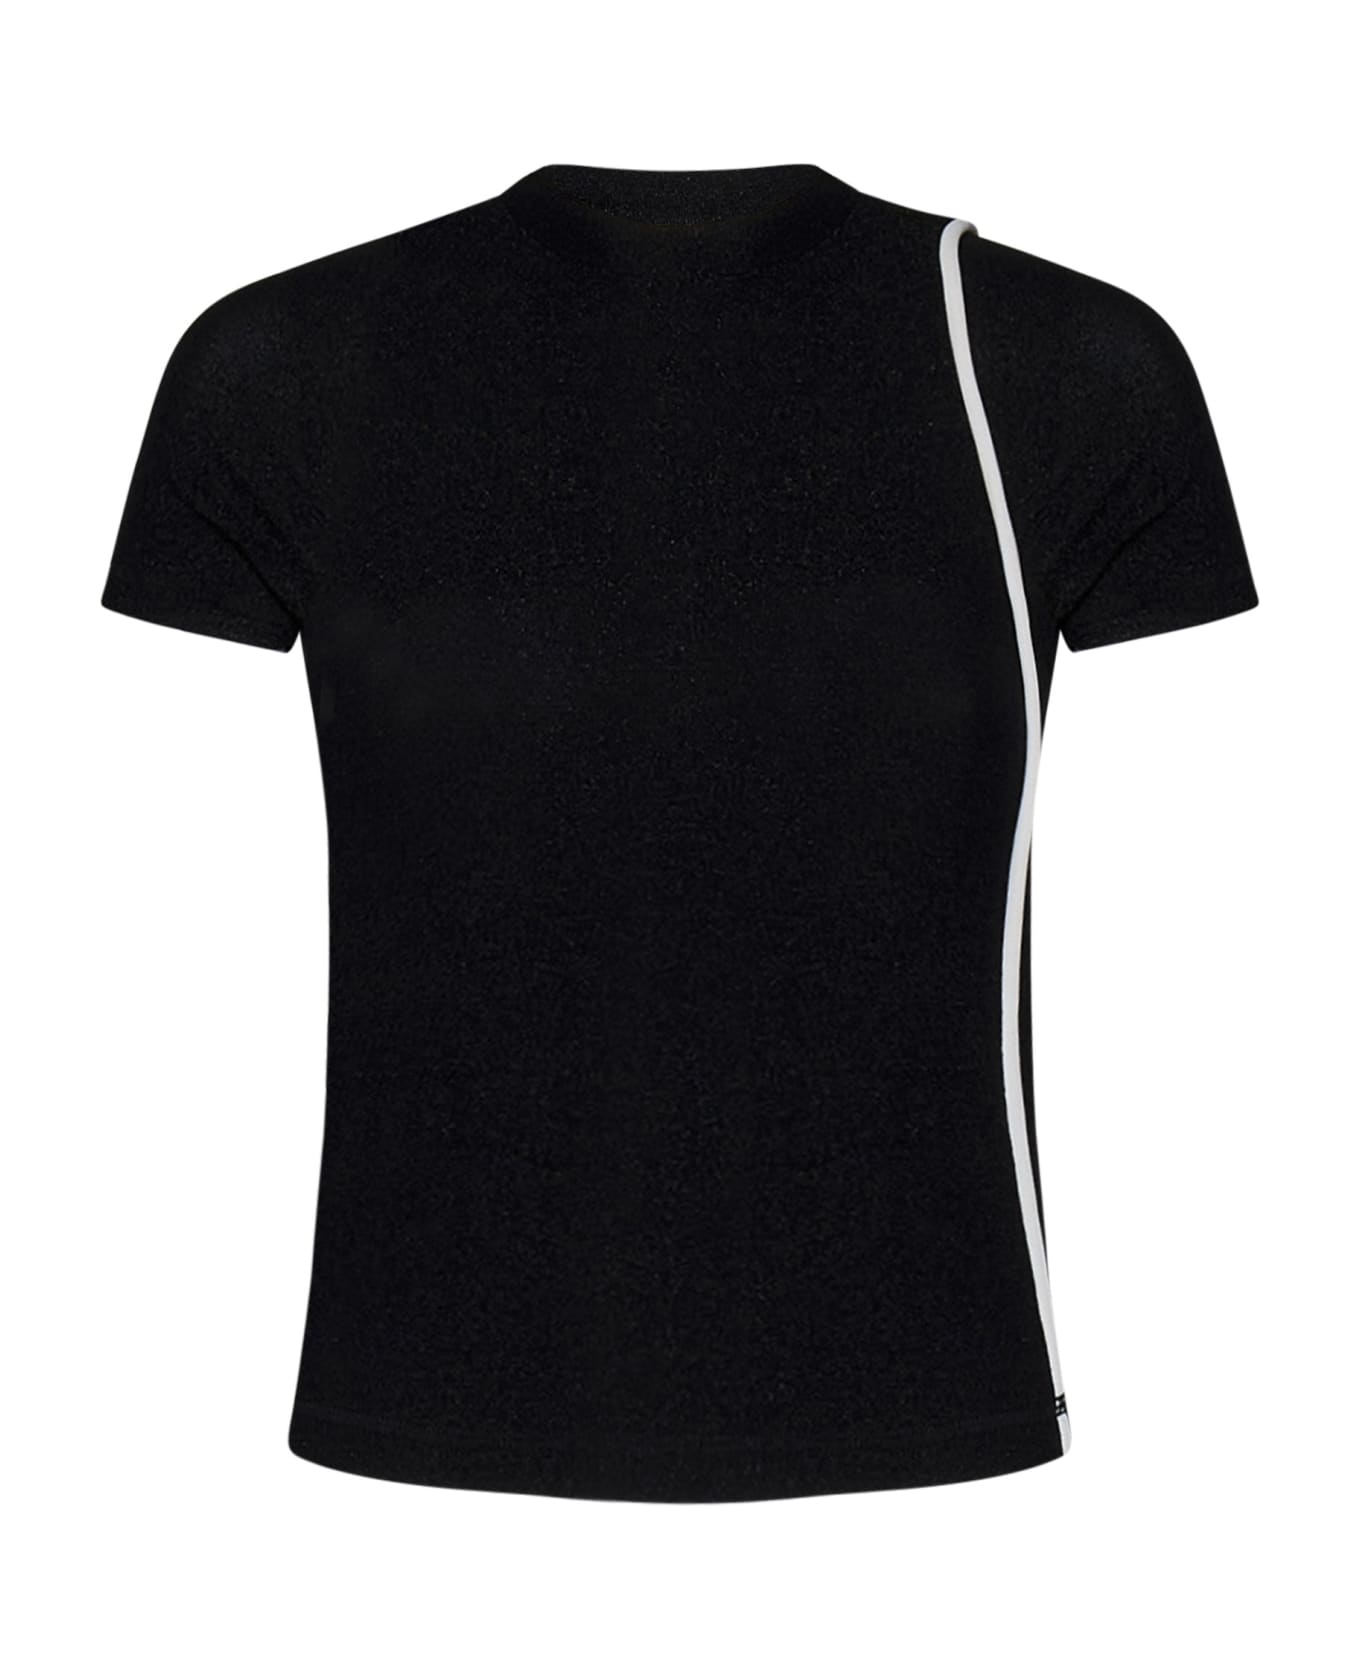 Ottolinger T-shirt - Black Tシャツ